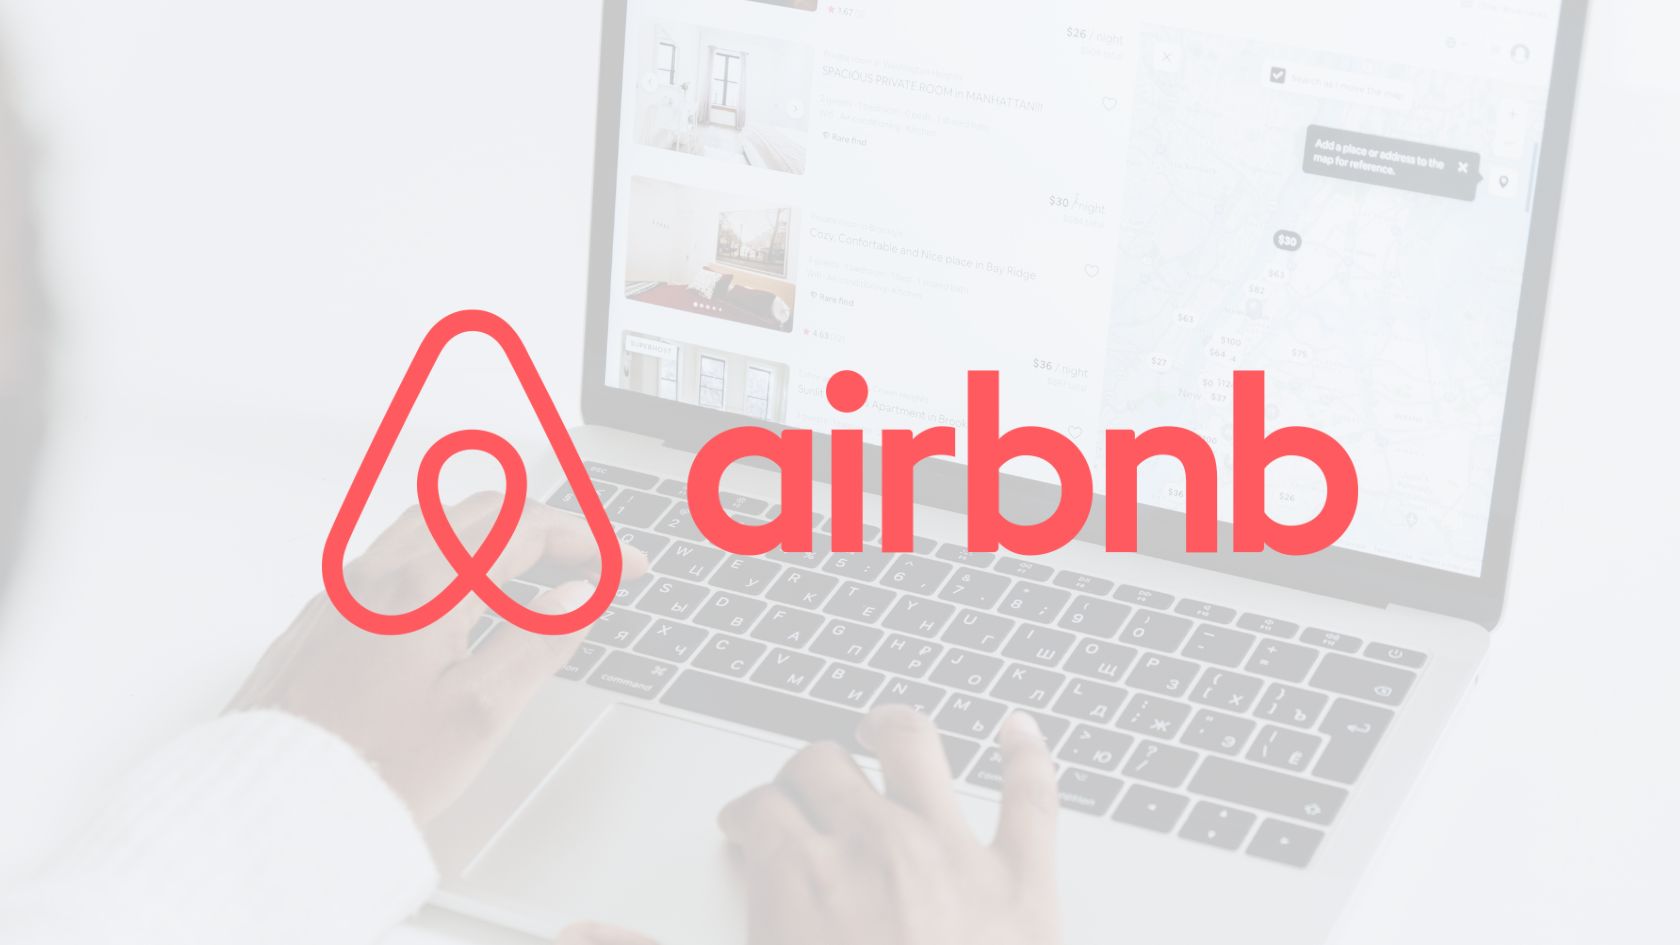 taxa airbnb